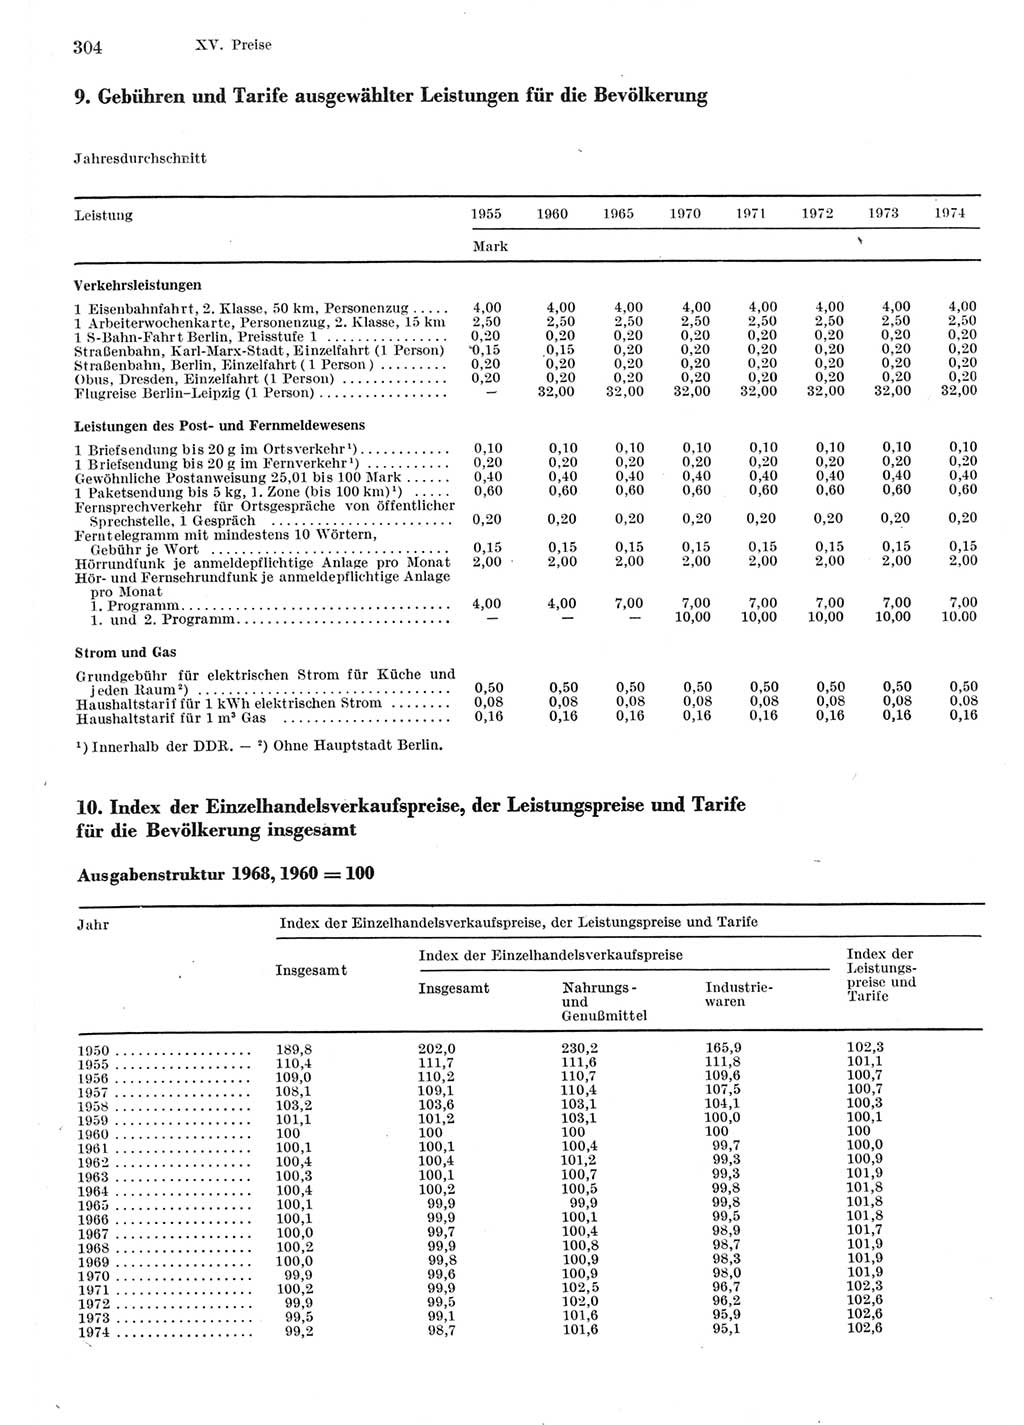 Statistisches Jahrbuch der Deutschen Demokratischen Republik (DDR) 1975, Seite 304 (Stat. Jb. DDR 1975, S. 304)